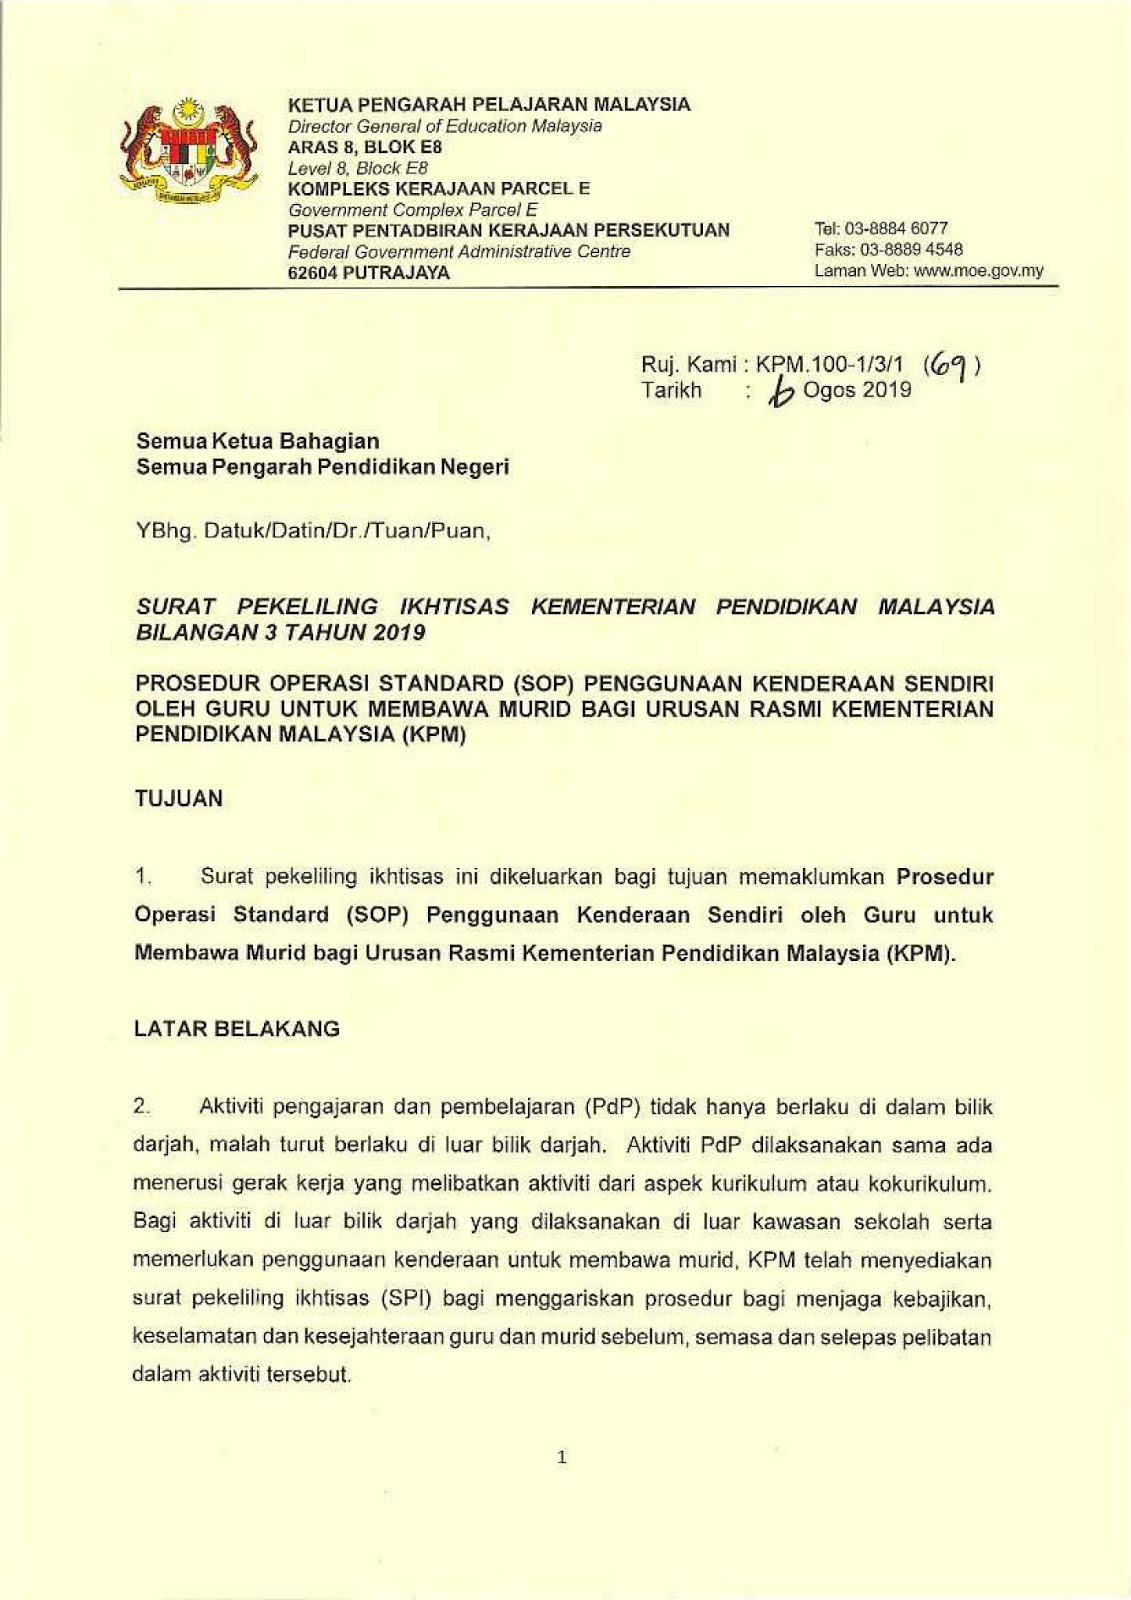 Surat Pekeliling Kementerian Kesihatan Malaysia Bilangan 3 Tahun 2019